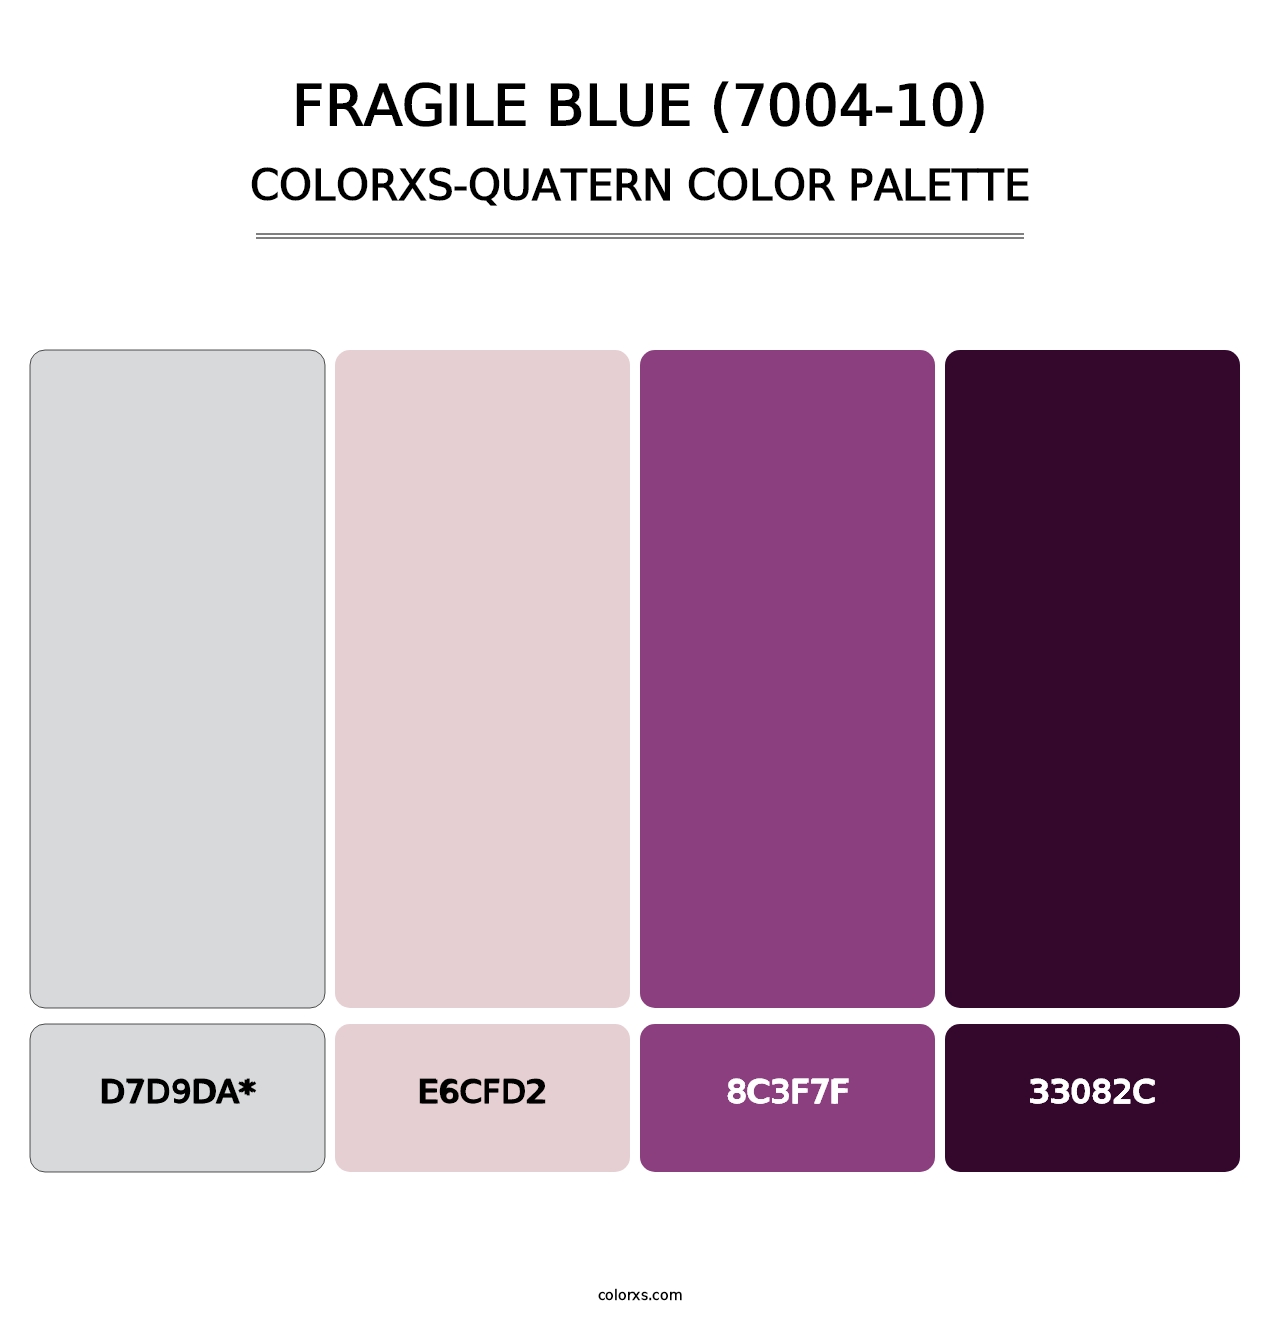 Fragile Blue (7004-10) - Colorxs Quatern Palette